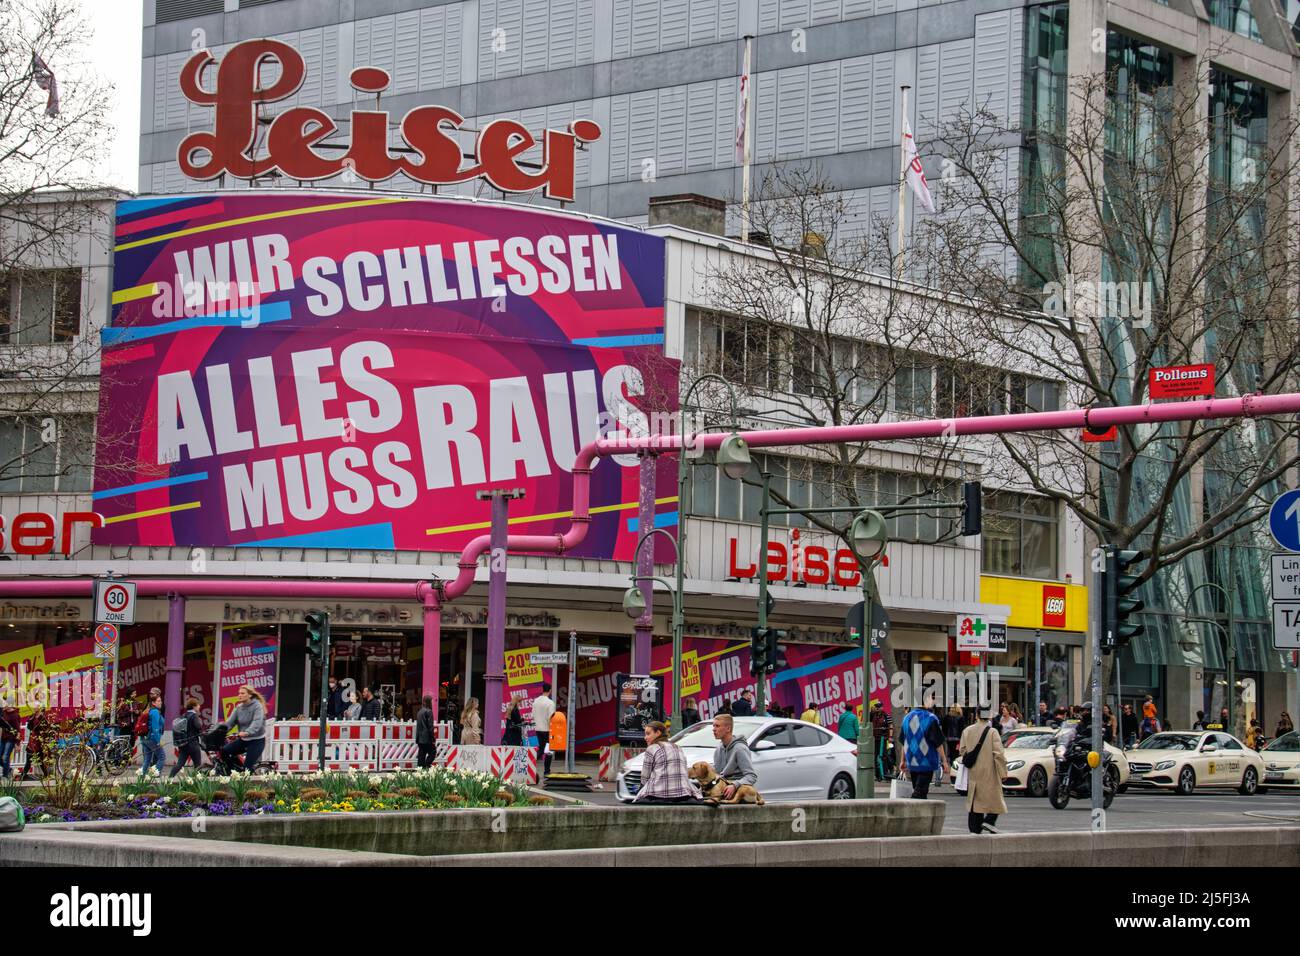 Legendäres Schuhhaus Leiser am Tauenzien in Berlin gibt Geschäft auf. Grund tiefgreifender Wandel im Einzelhandel . Stock Photo